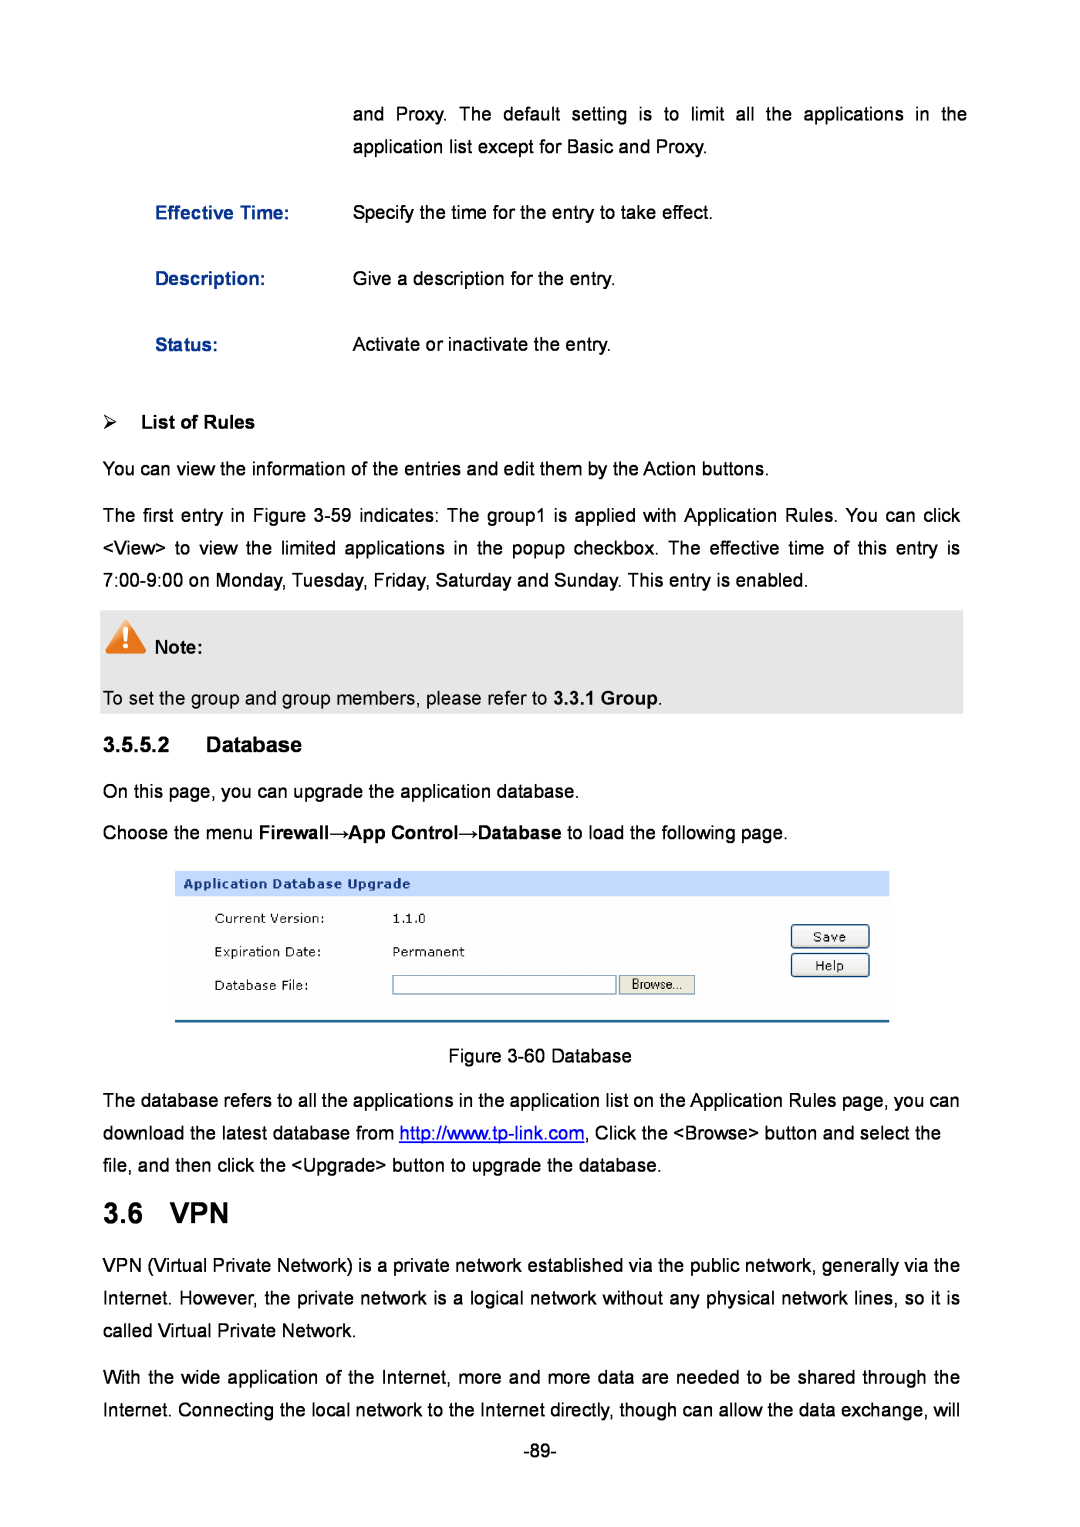 TP-Link TL-ER604W manual 3.6 VPN, Database,  List of Rules 